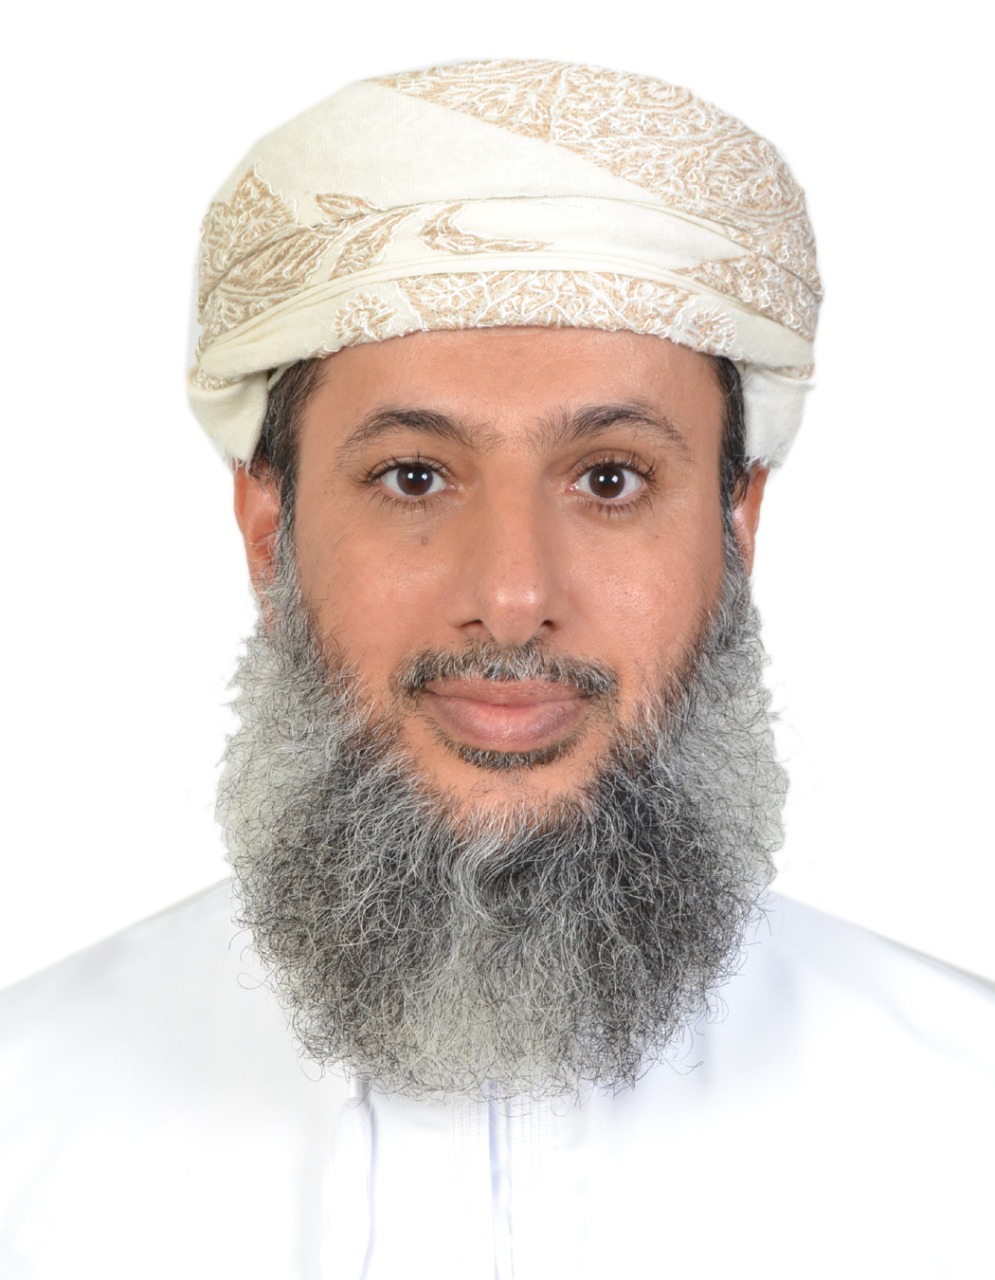 Dr. Khalil Bader Ali Al Ruqeishi